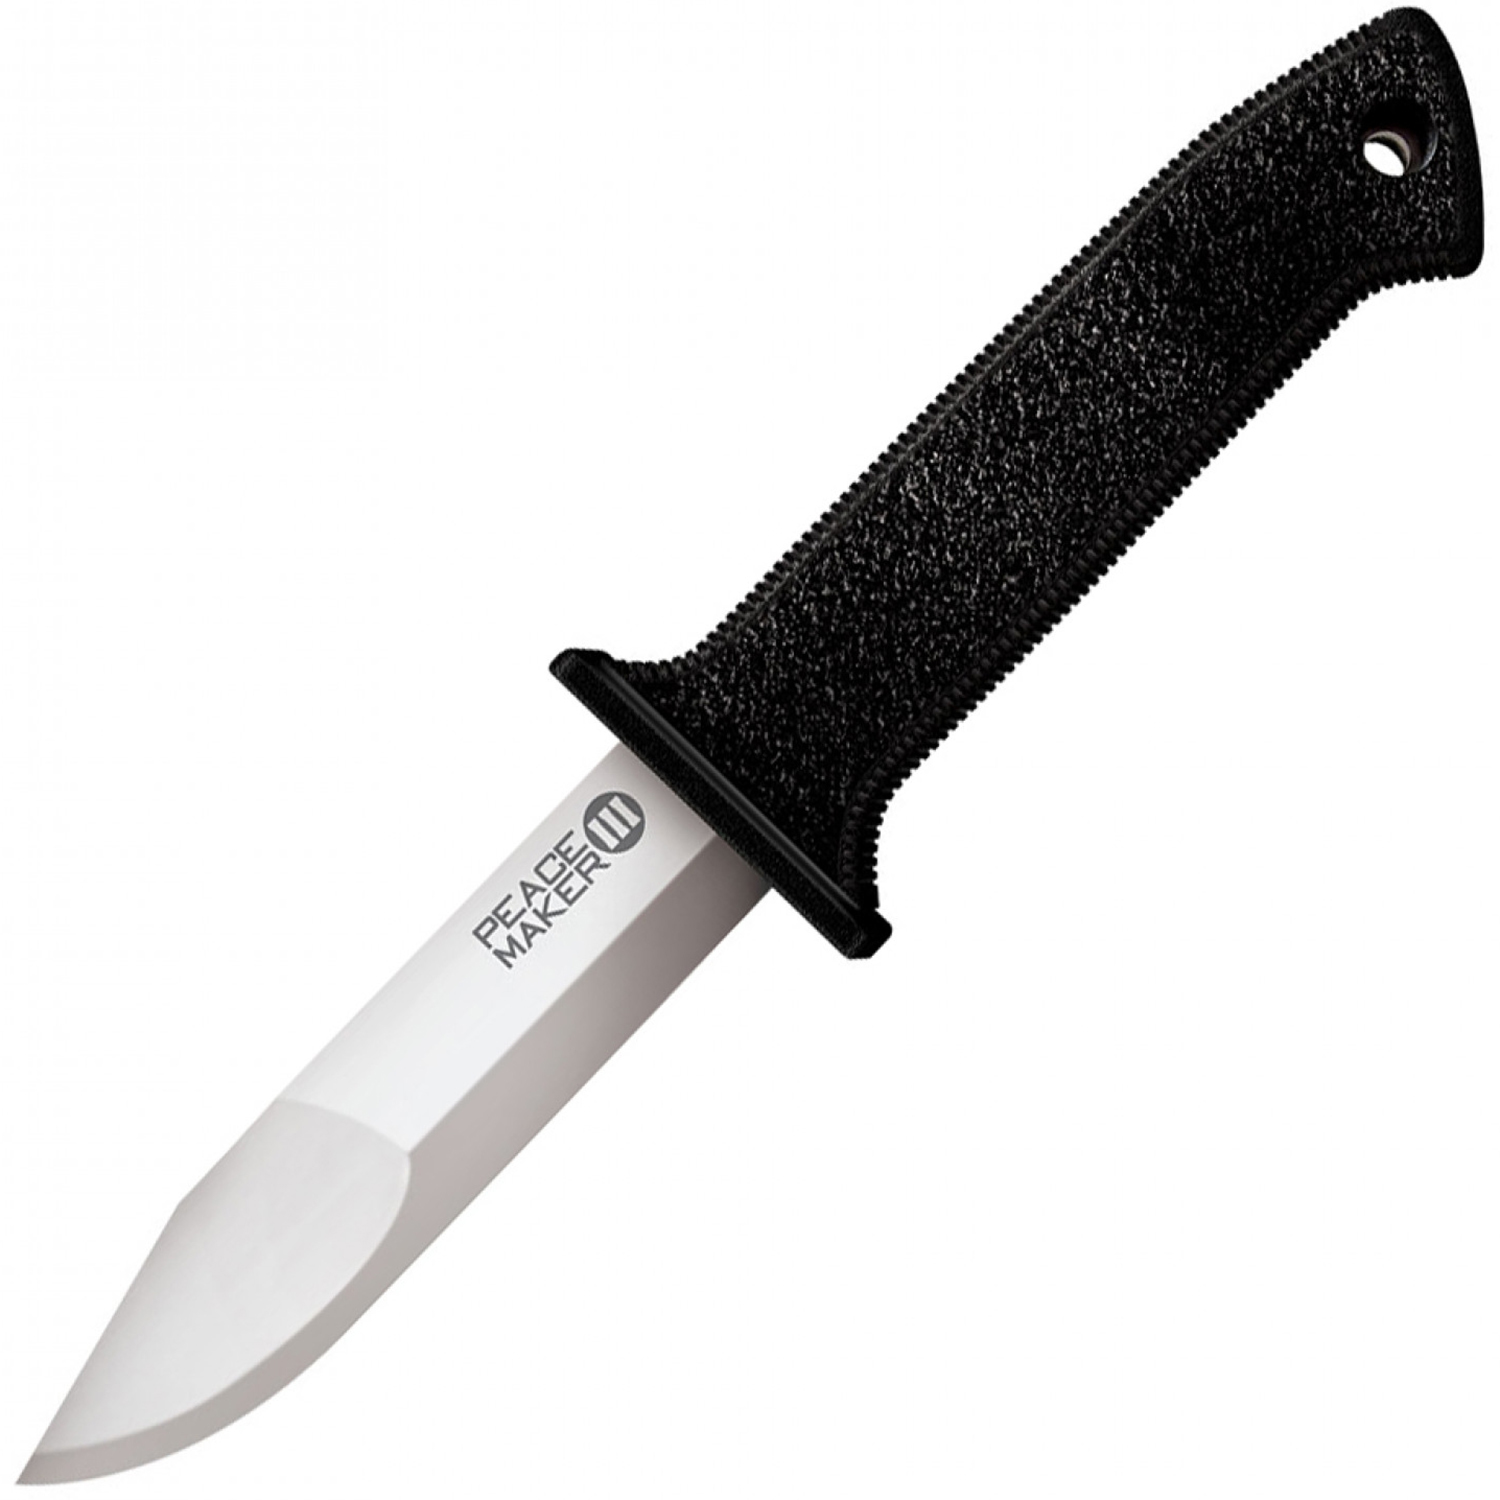 Нож Cold Steel Peace Maker III 20PBS, сталь 4116, рукоять резина складной нож cold steel pocket bushman 95fb сталь 4116 рукоять нержавеющая сталь